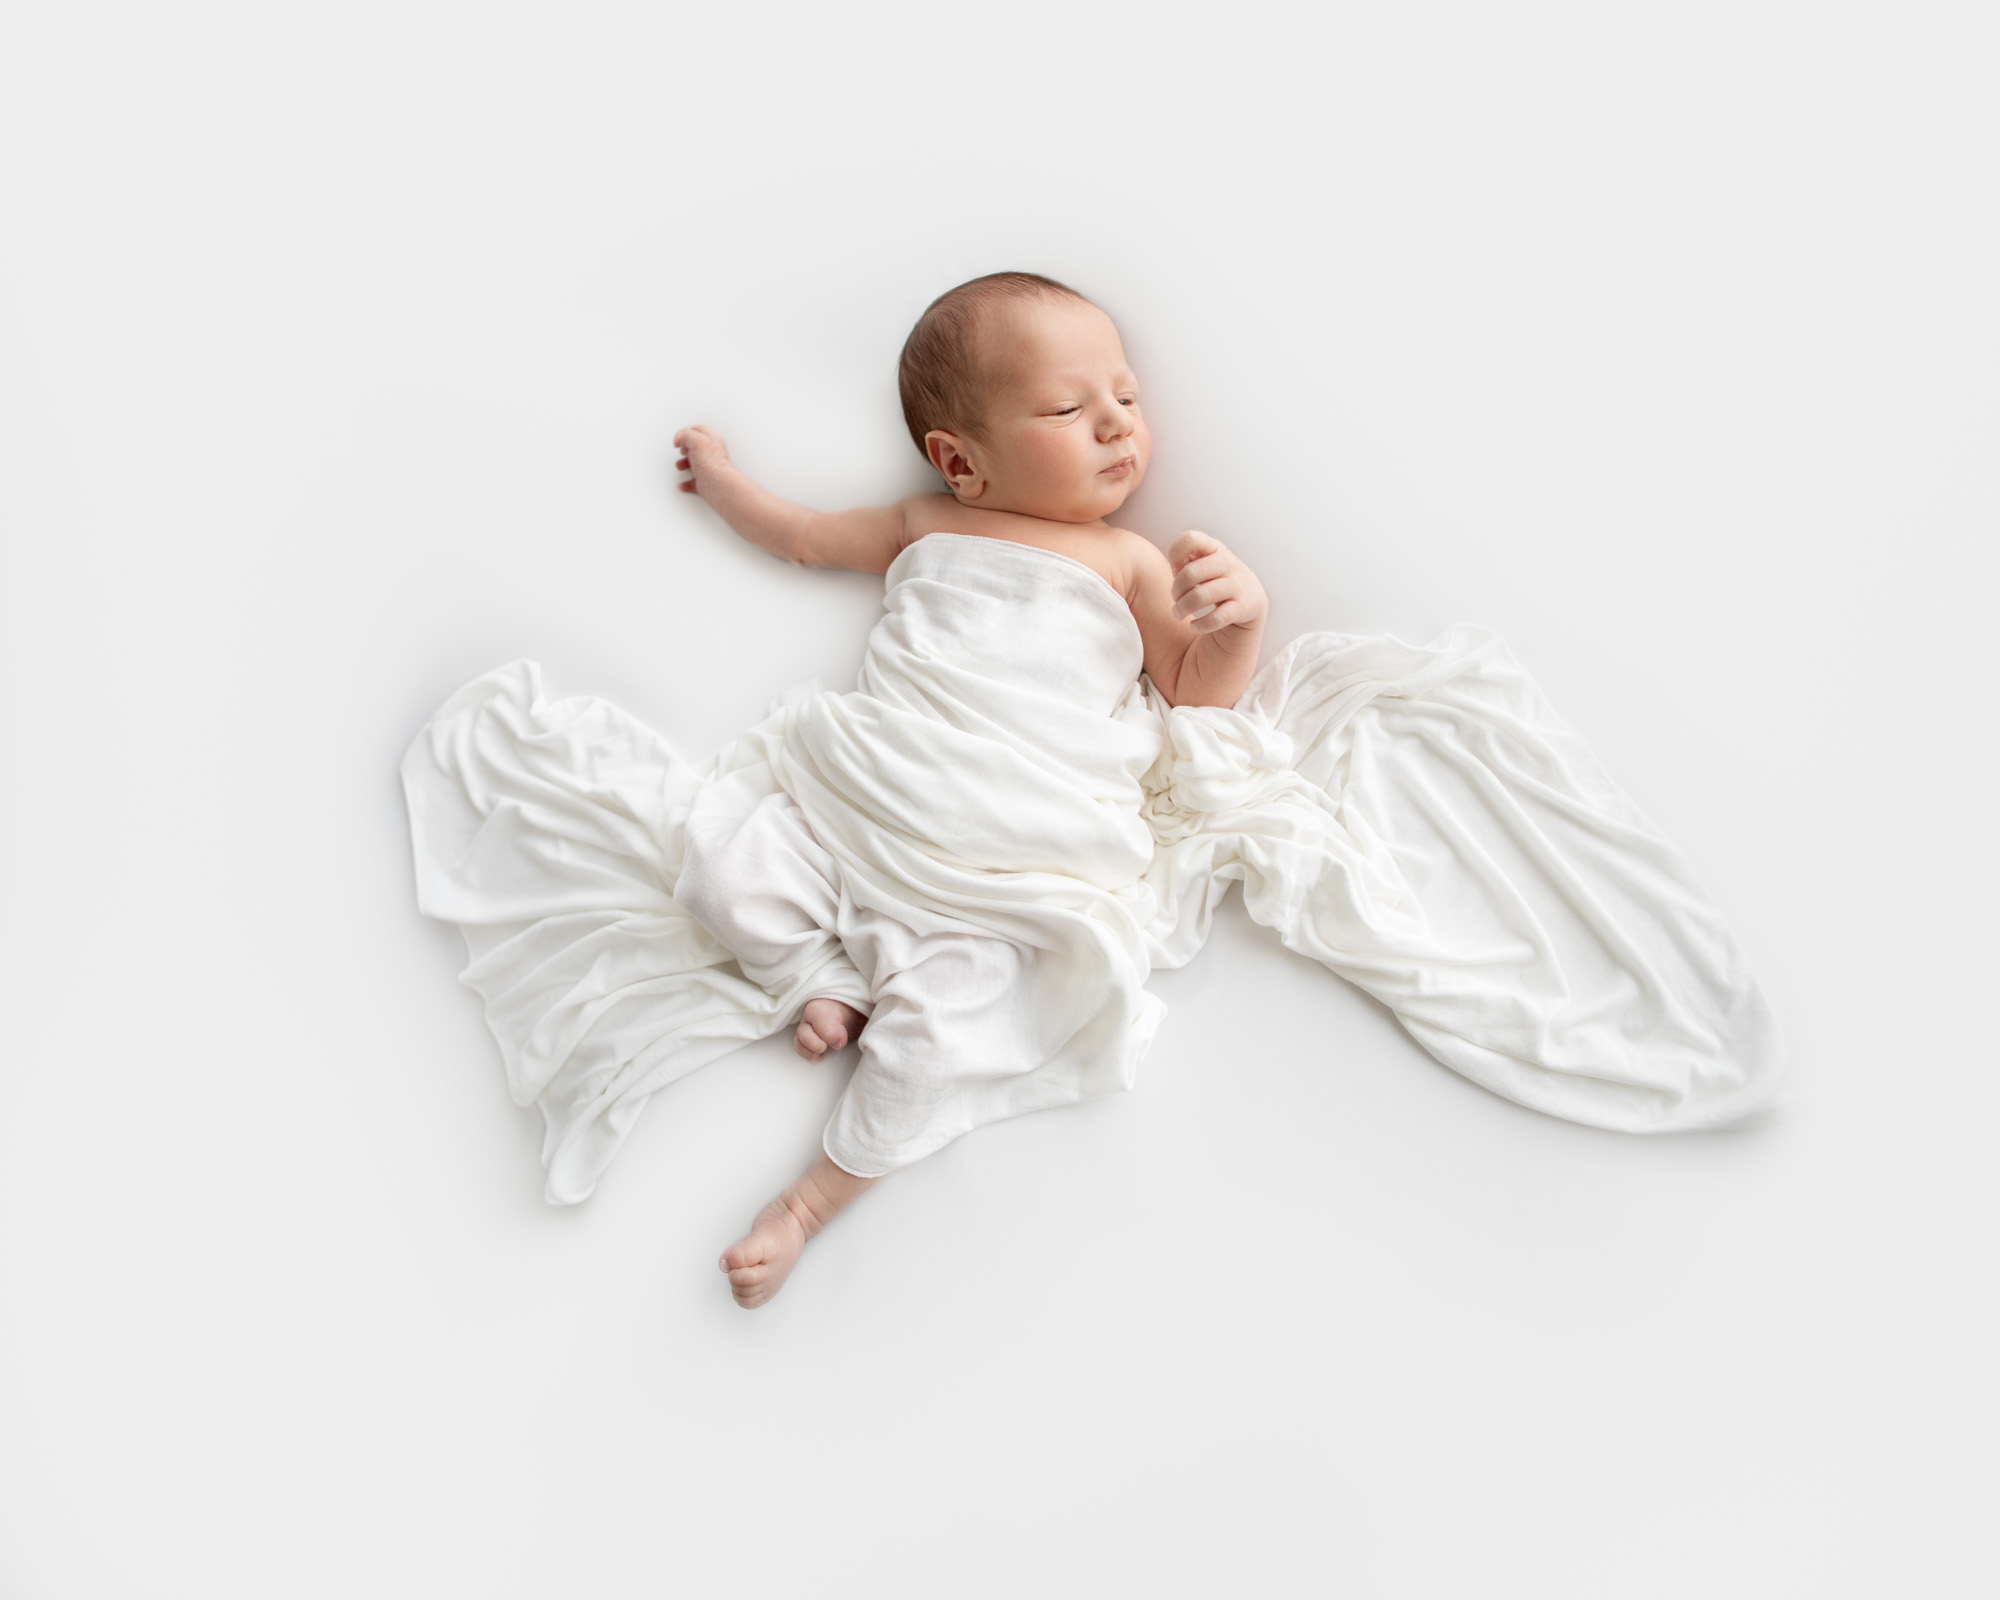 Newborn Baby Minimalist Blackand White 2Analia Paino Portrait Photographer.jpg